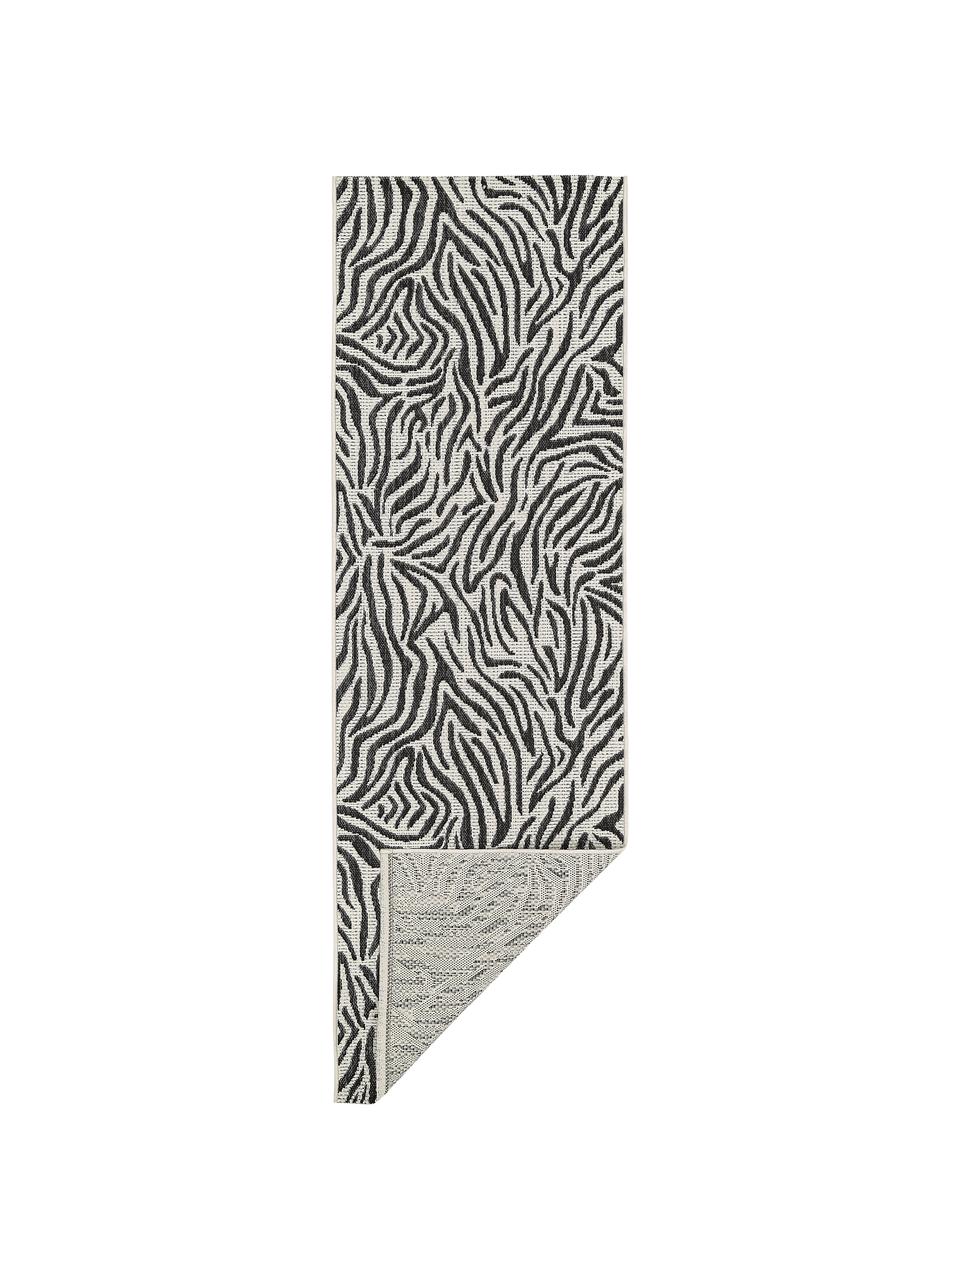 Passatoia da interno-esterno Exotic, Retro: poliestere, Bianco crema, nero, Larg. 80 x Lung. 250 cm